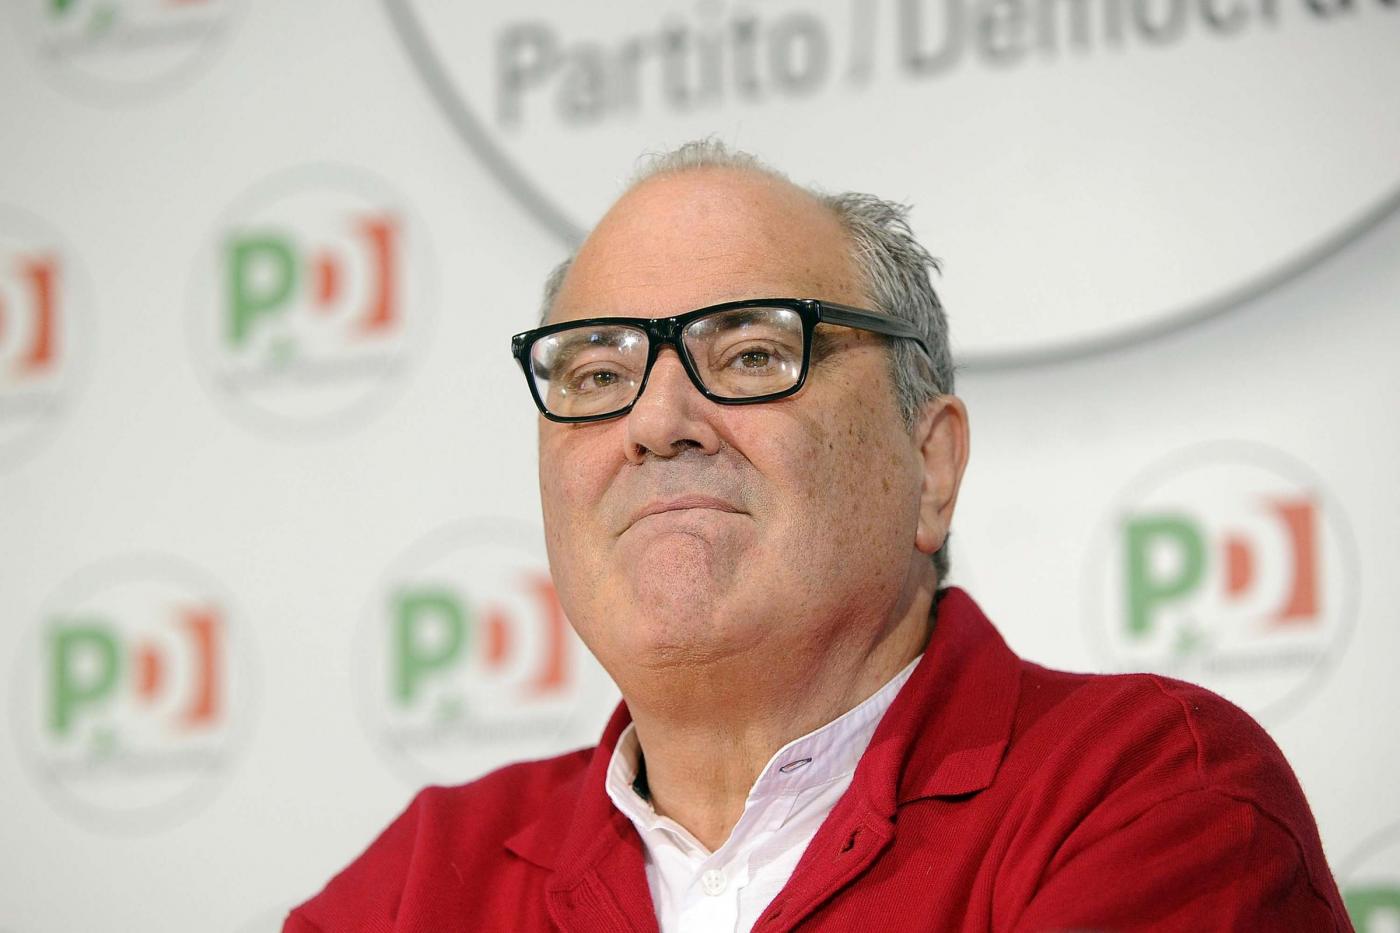 Bettini (Pd) apre alla linea verde: "Le nuove generazioni devono rifondare la sinistra"